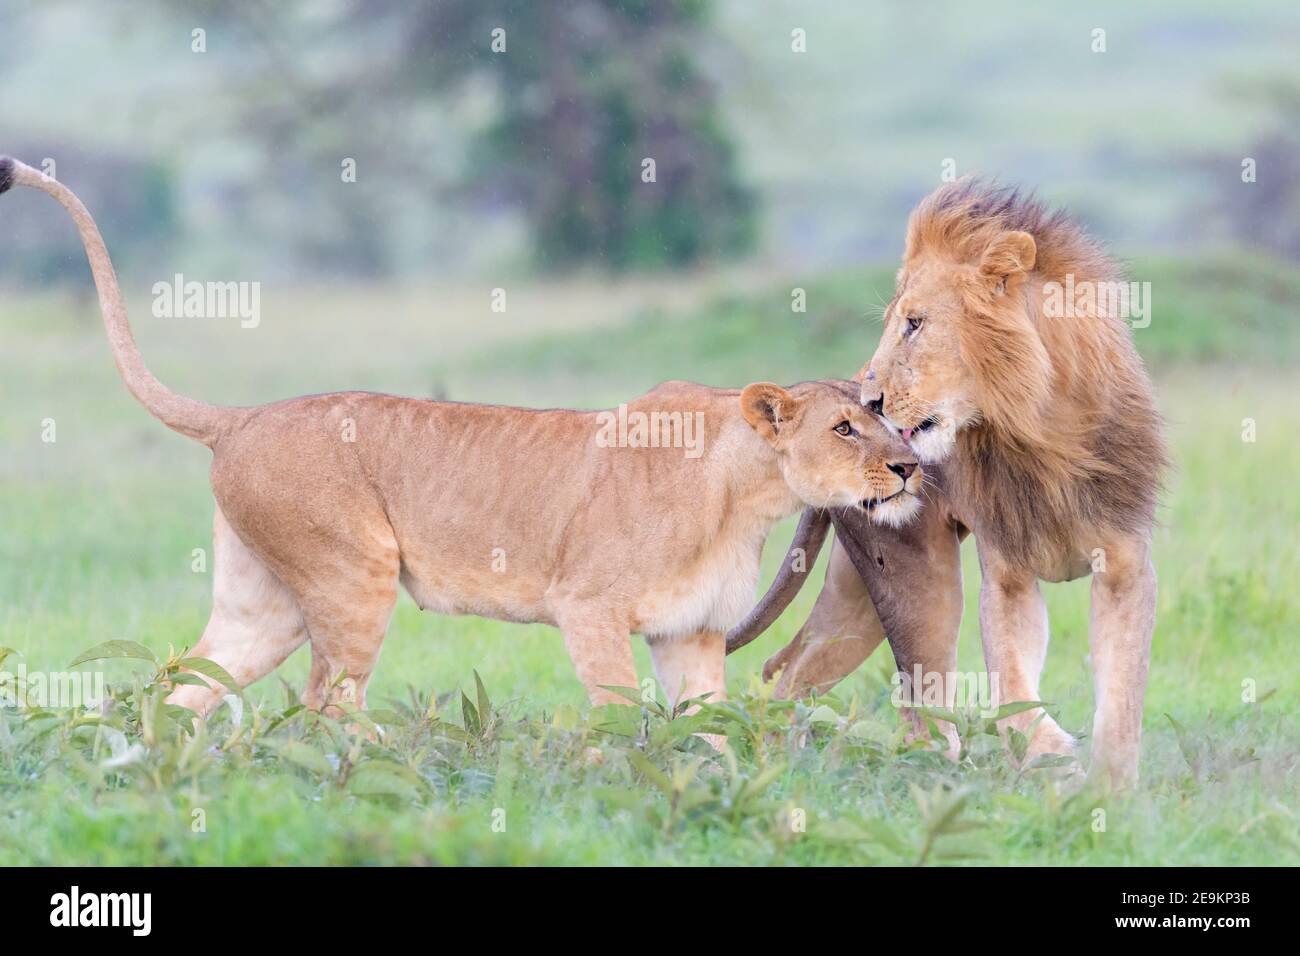 La lionne (Panthera leo) salue le lion masculin sur la savane, réserve nationale de Masai Mara, Kenya. Banque D'Images